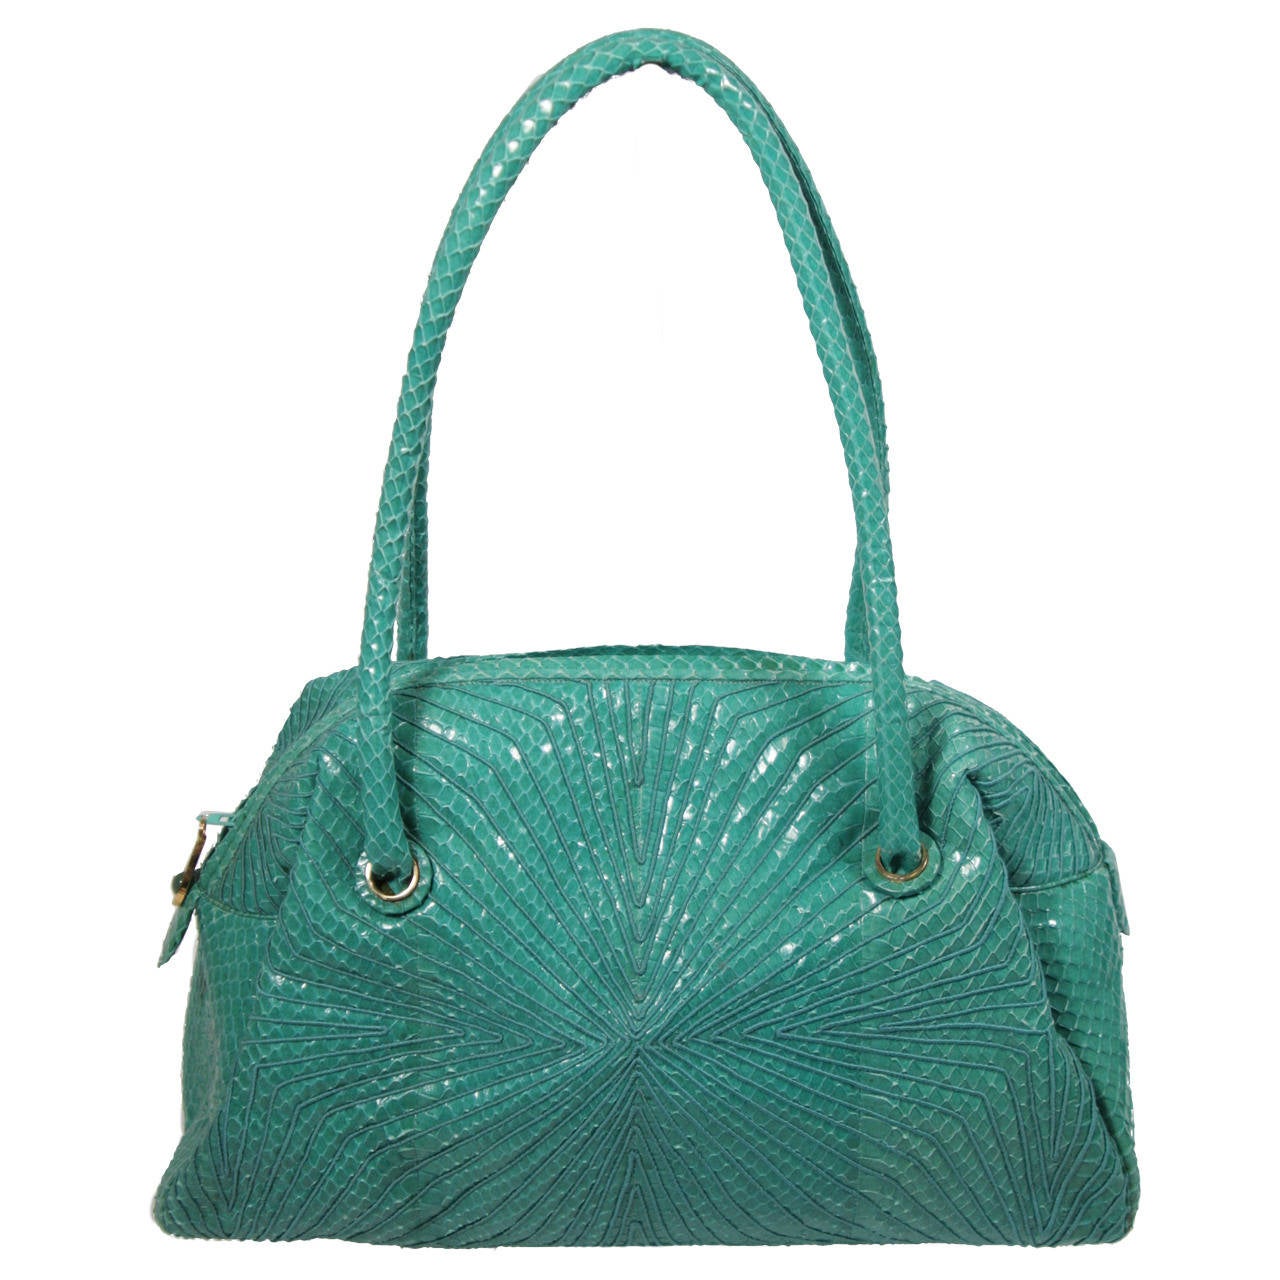 Judith Leiber Turquoise Snake Skin Handbag For Sale at 1stdibs